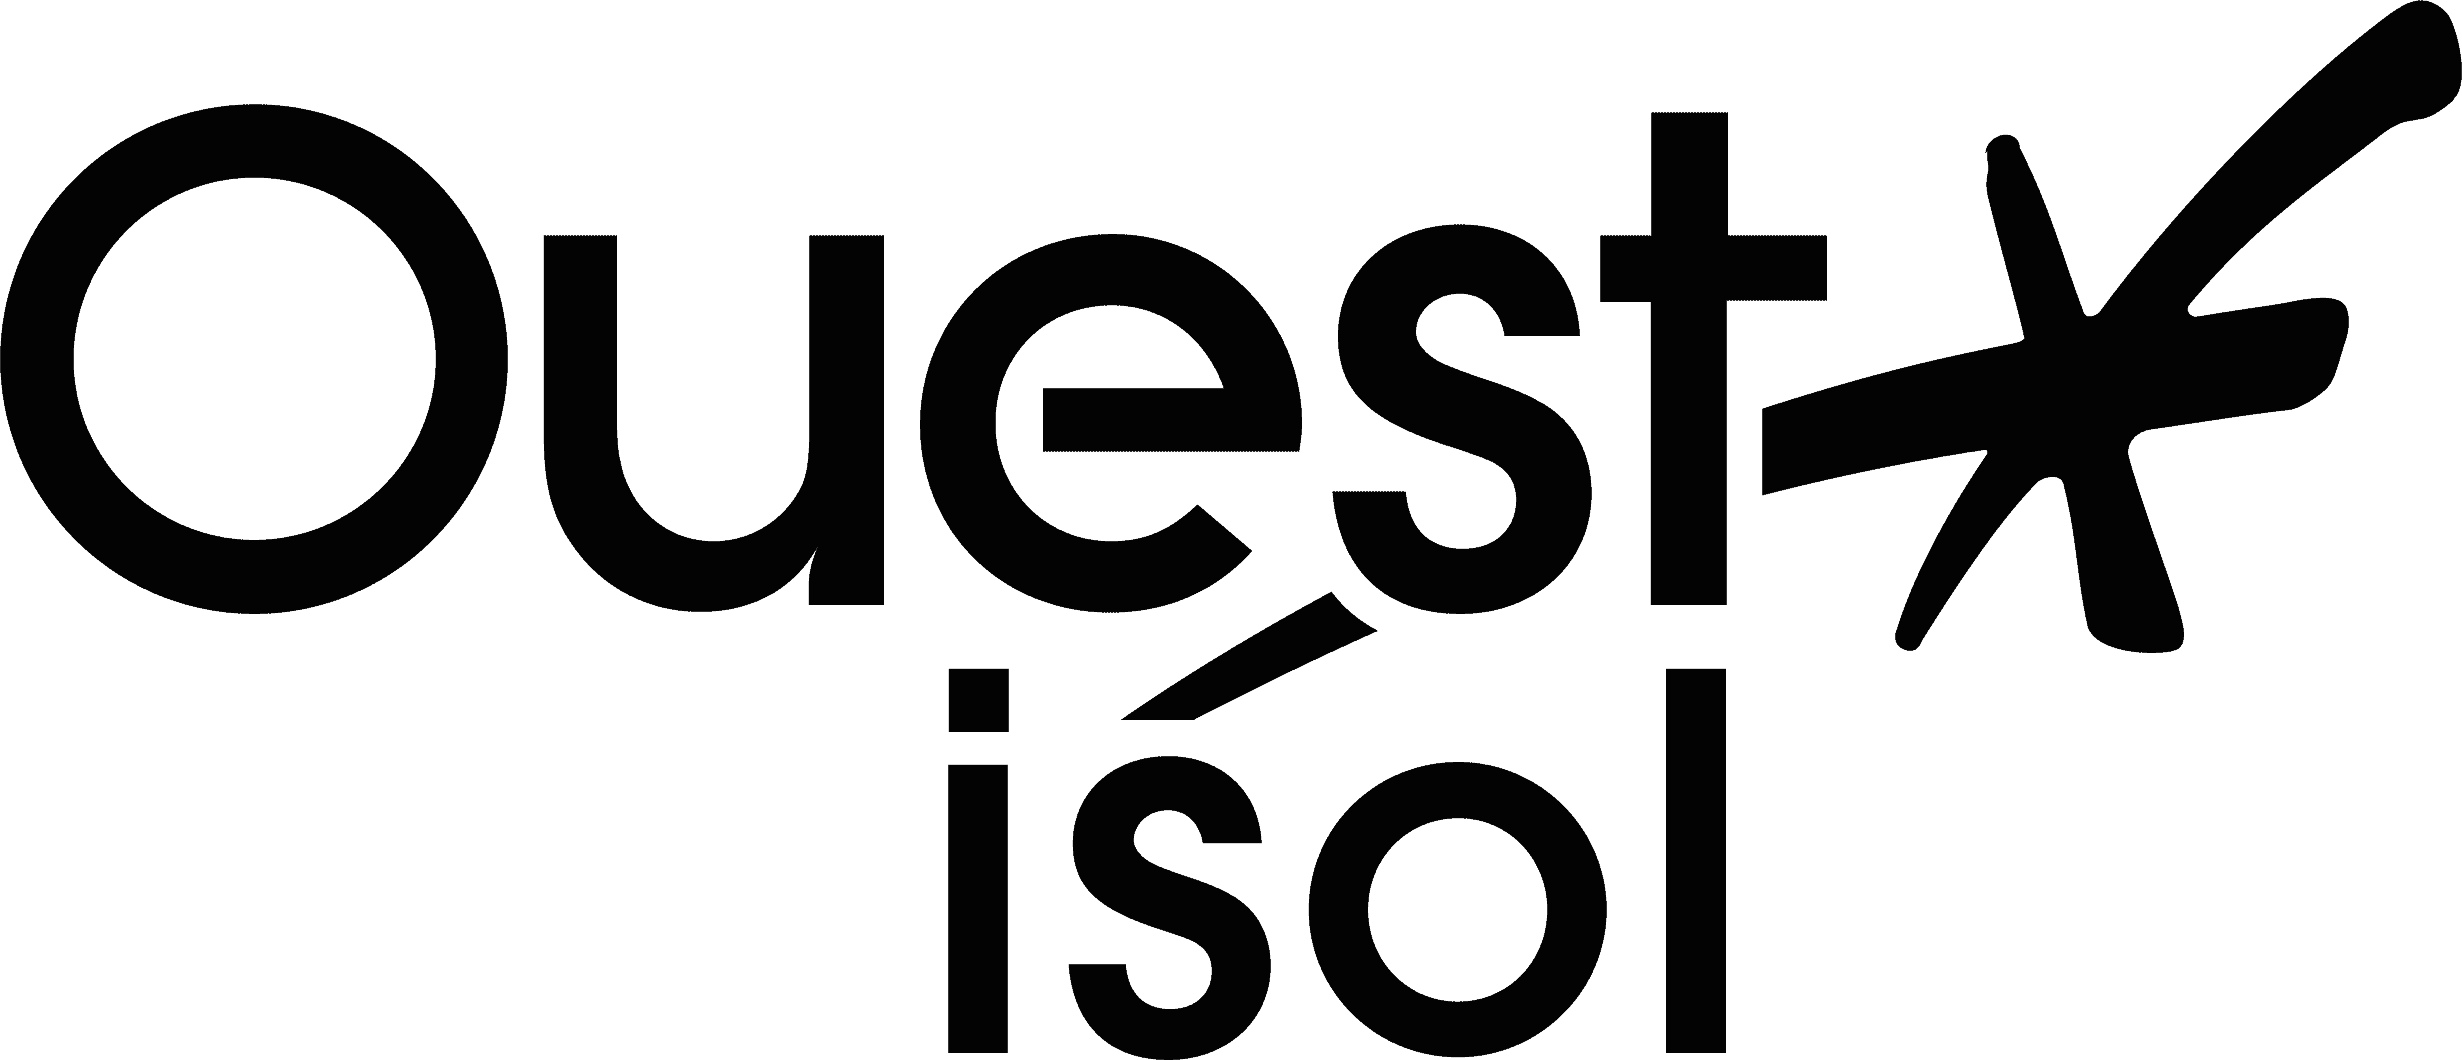 logo Ouest-Isol-sans fond_noir